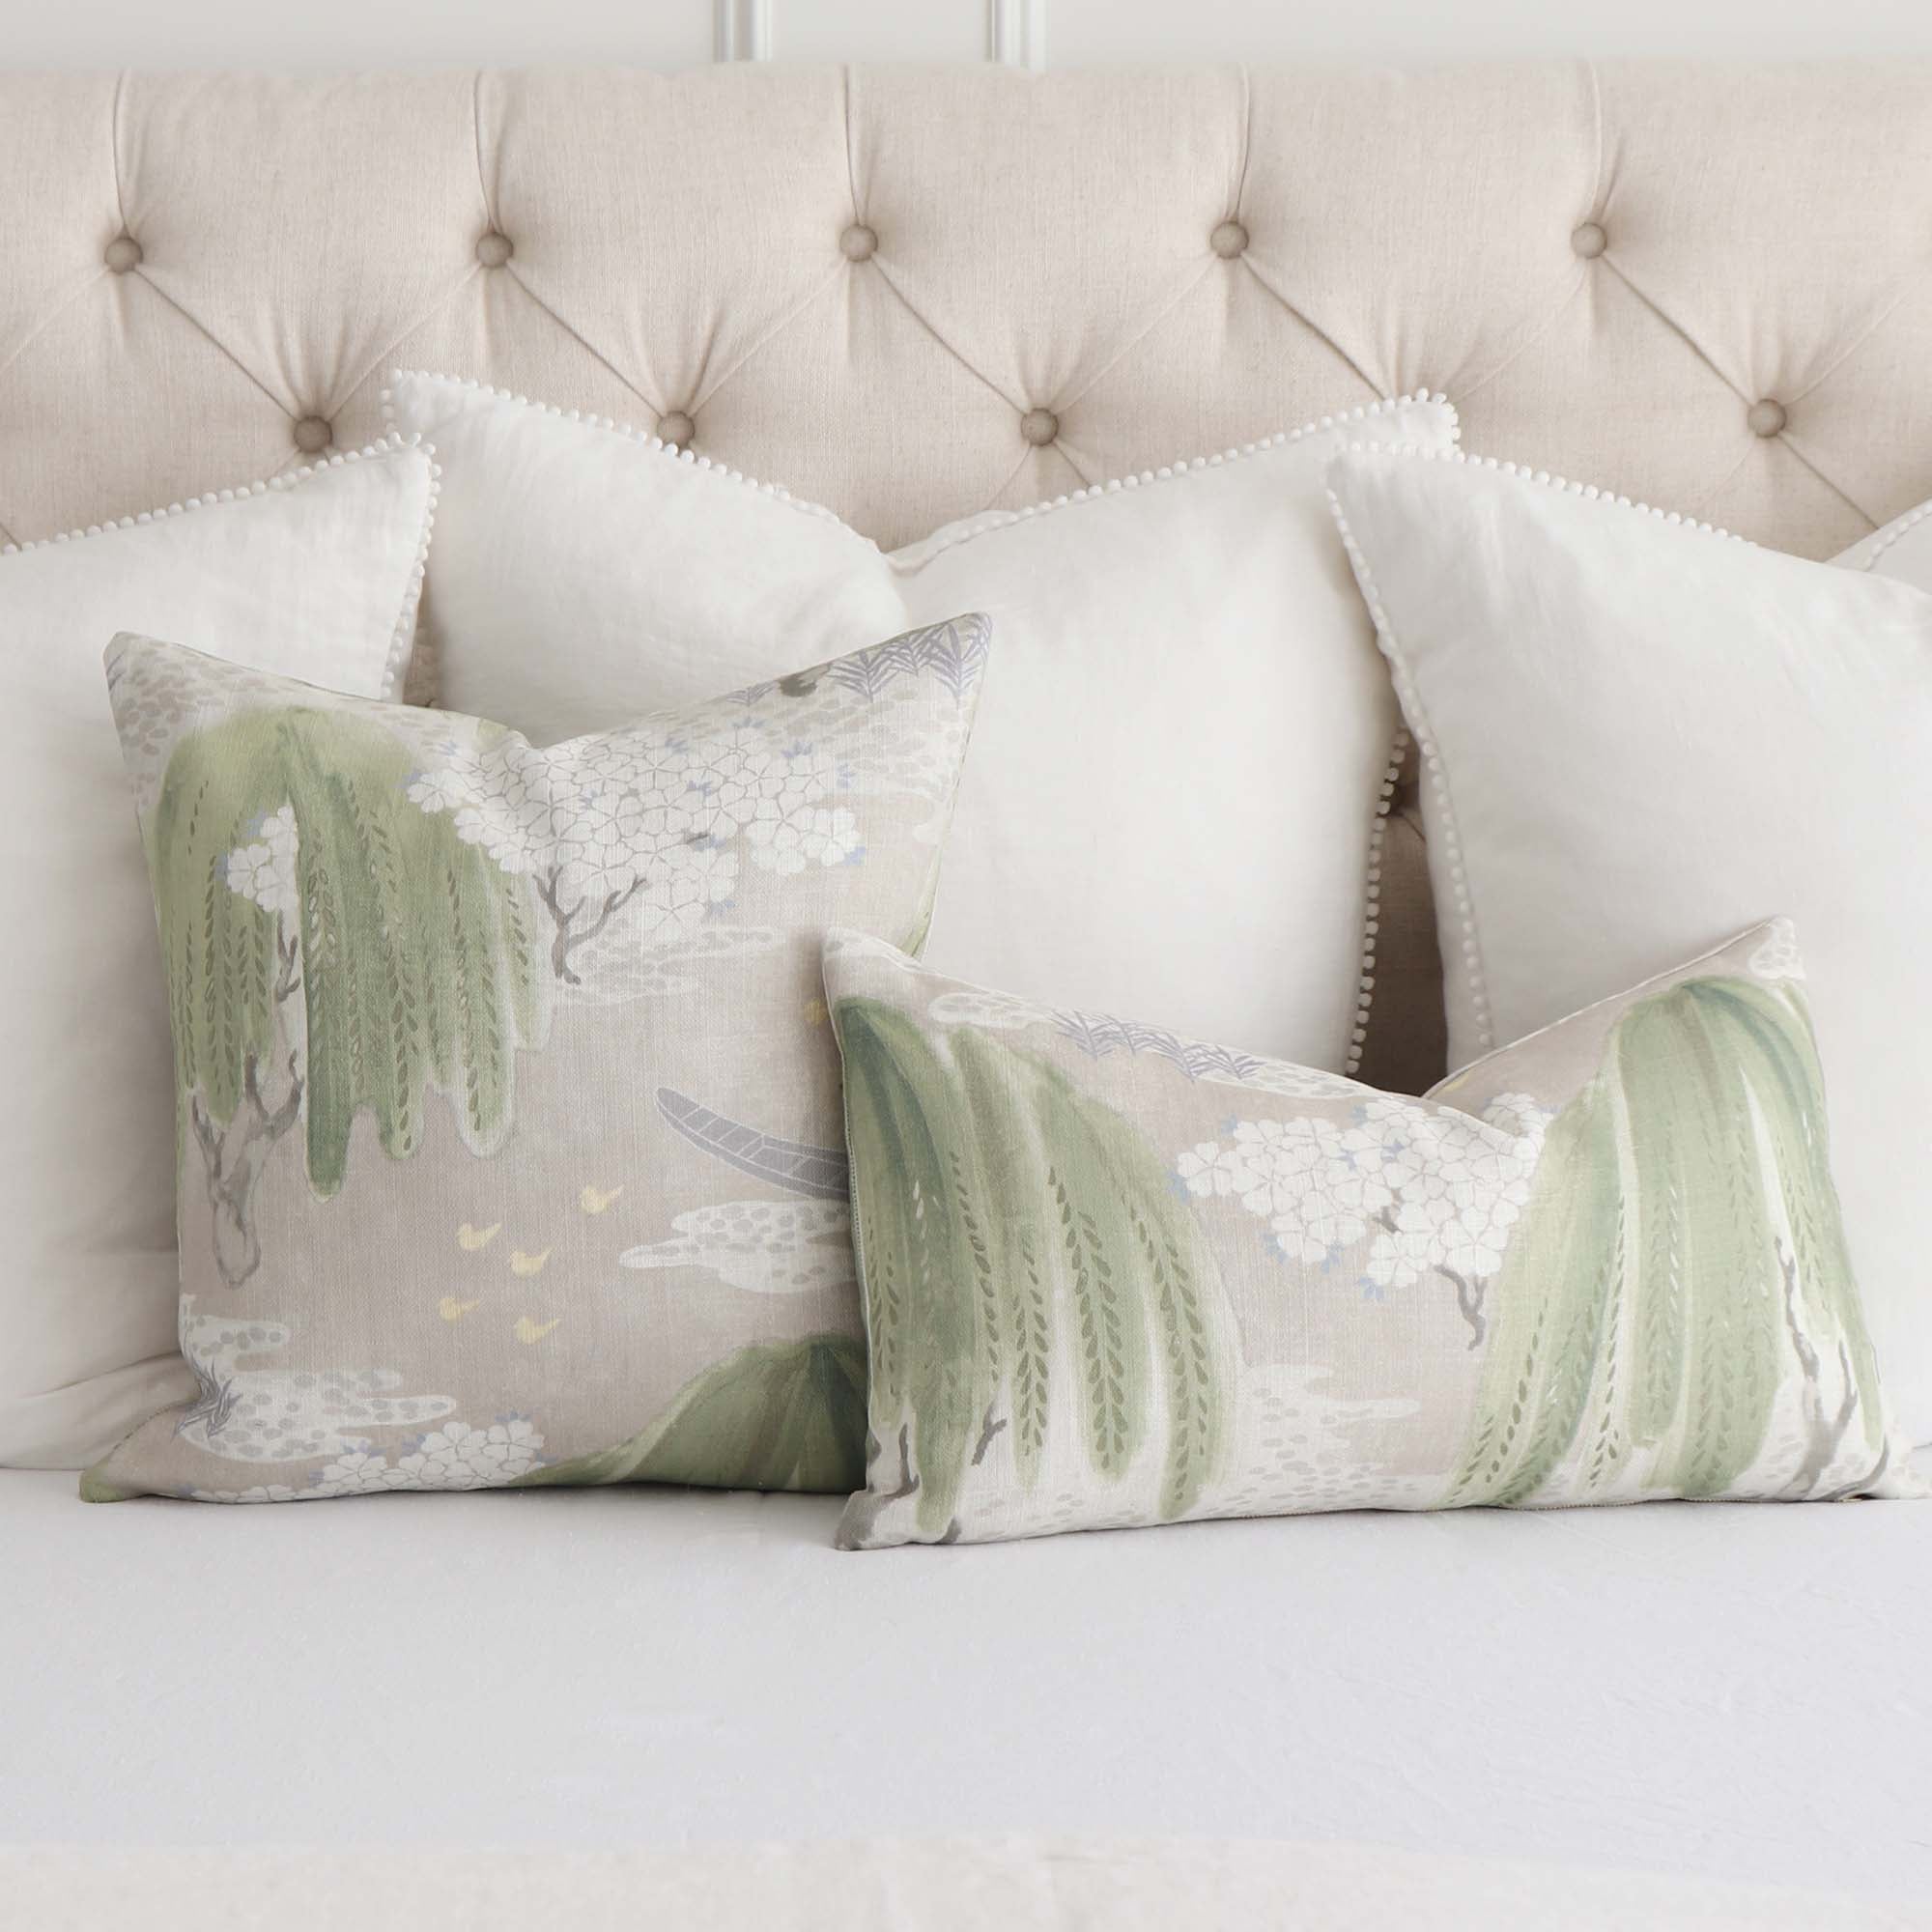  Long Decorative Lumbar Pillows For Bed